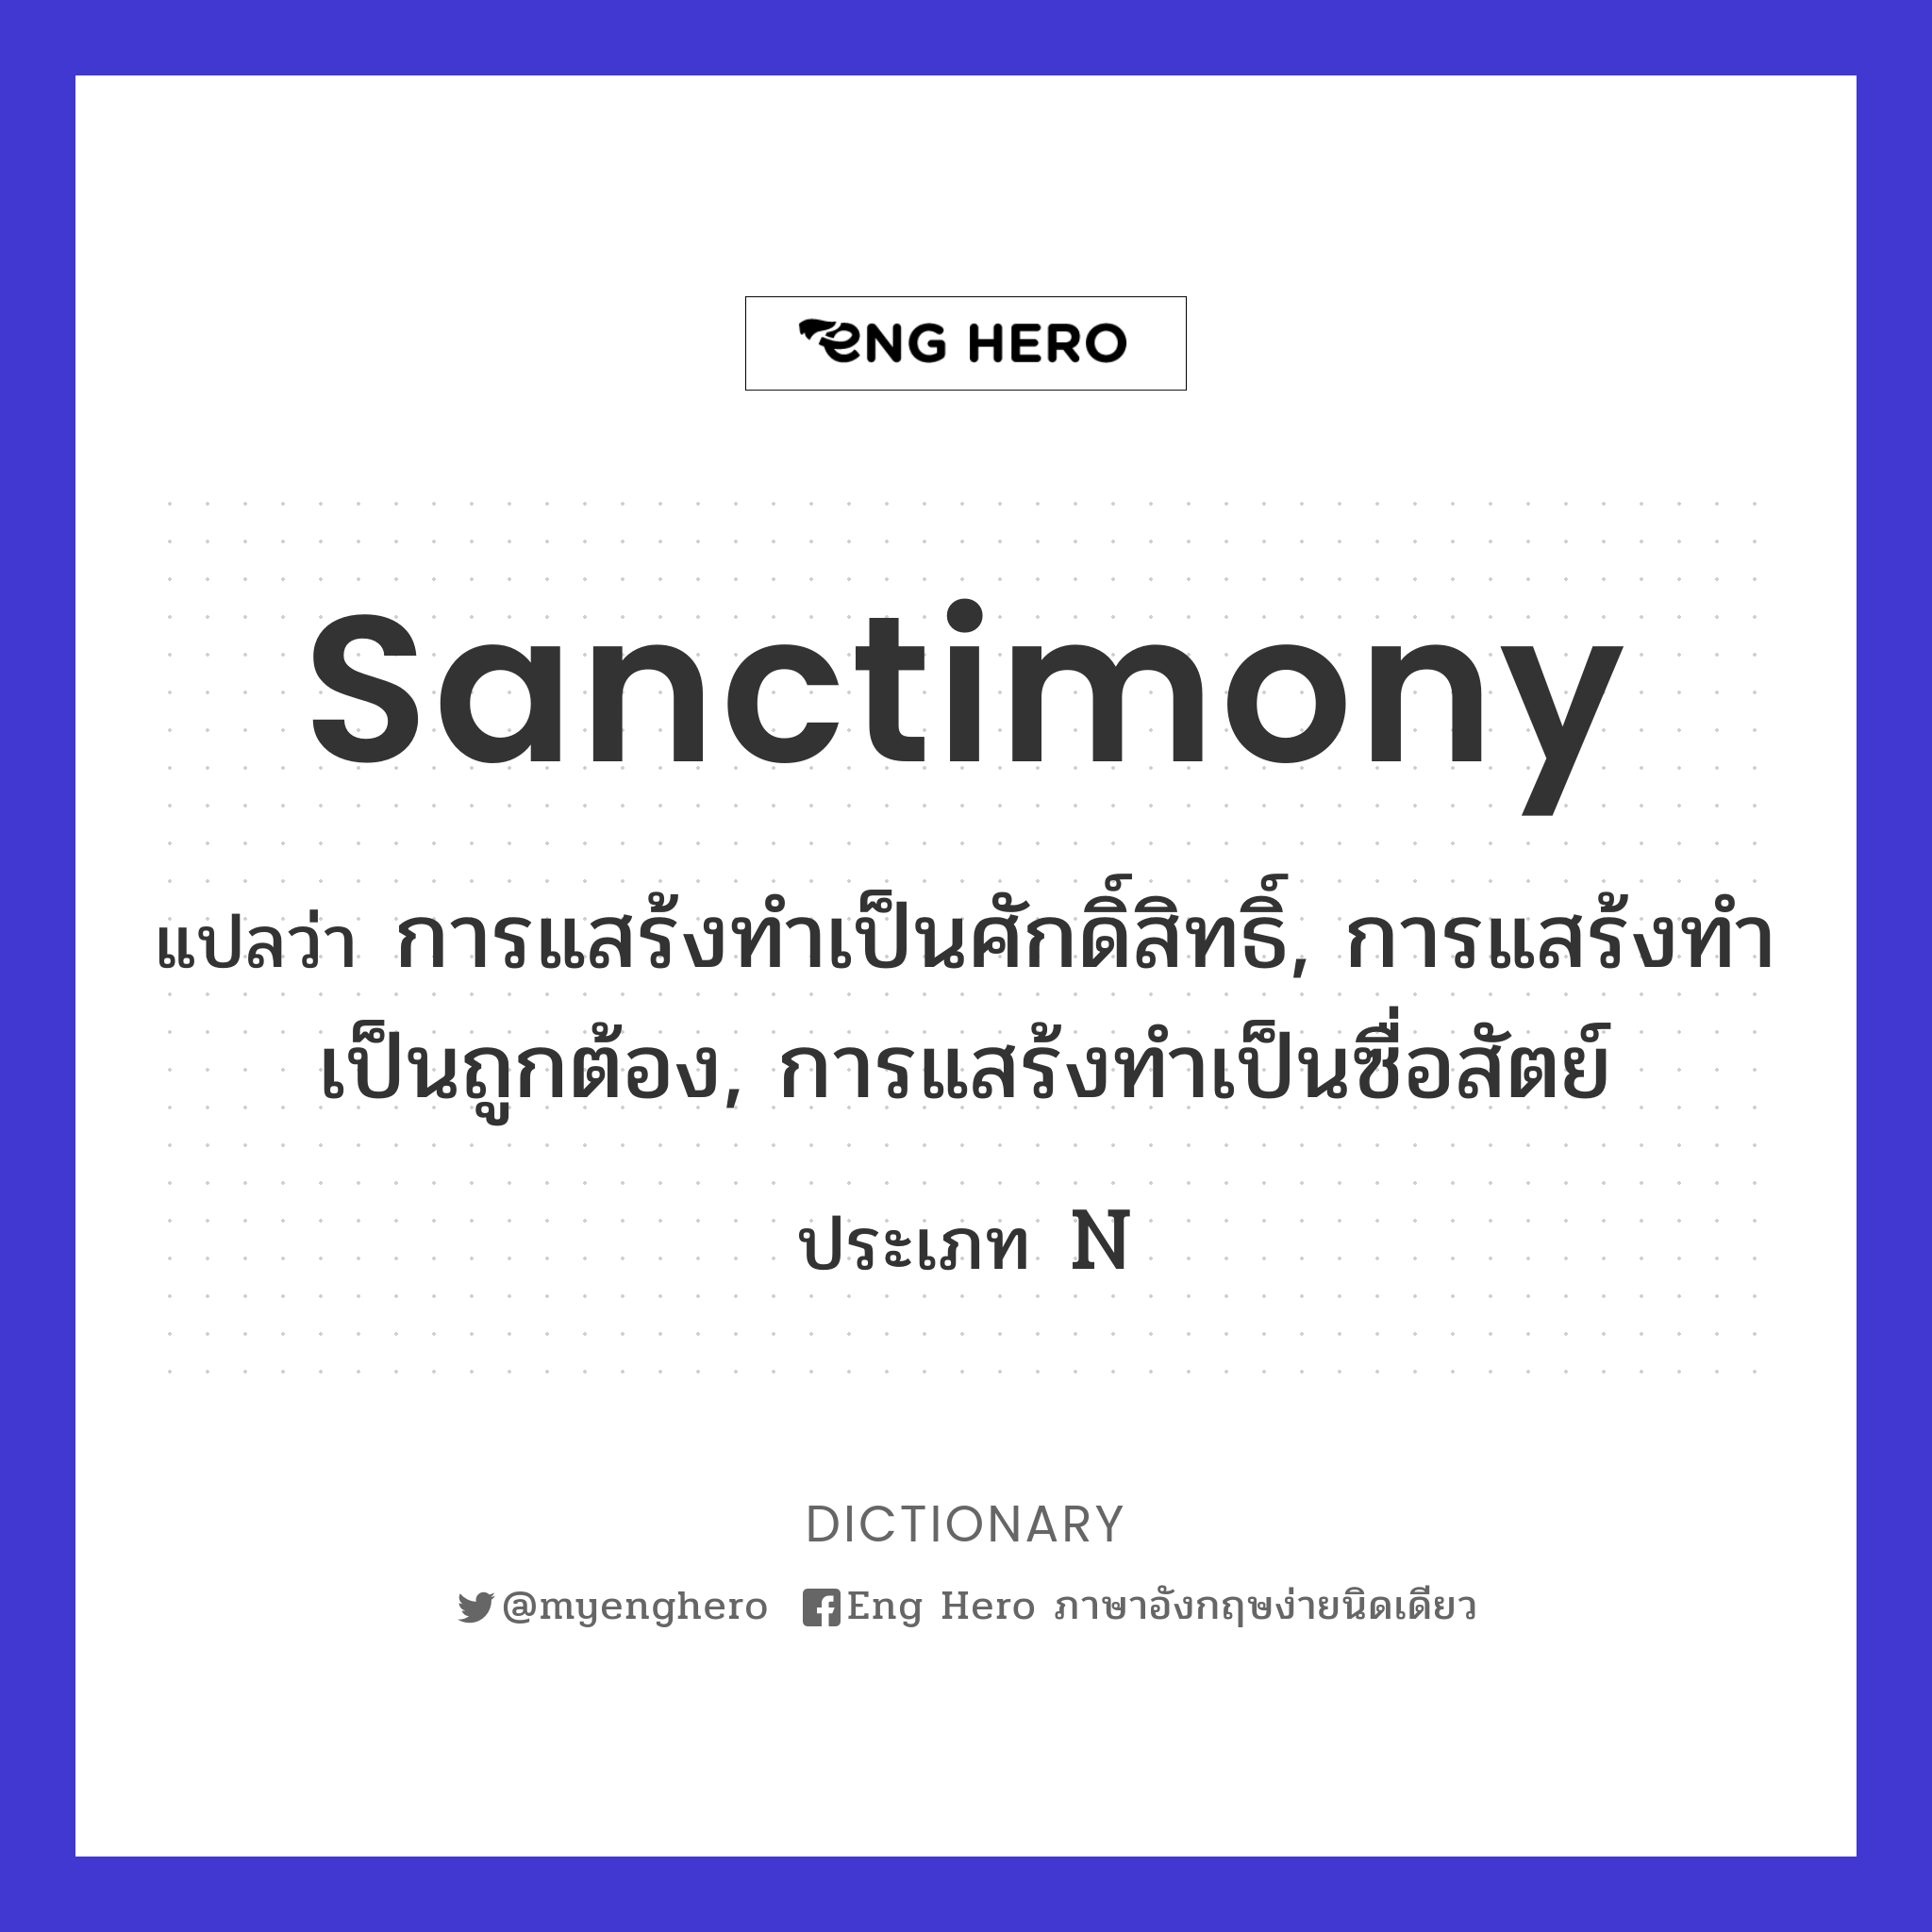 sanctimony